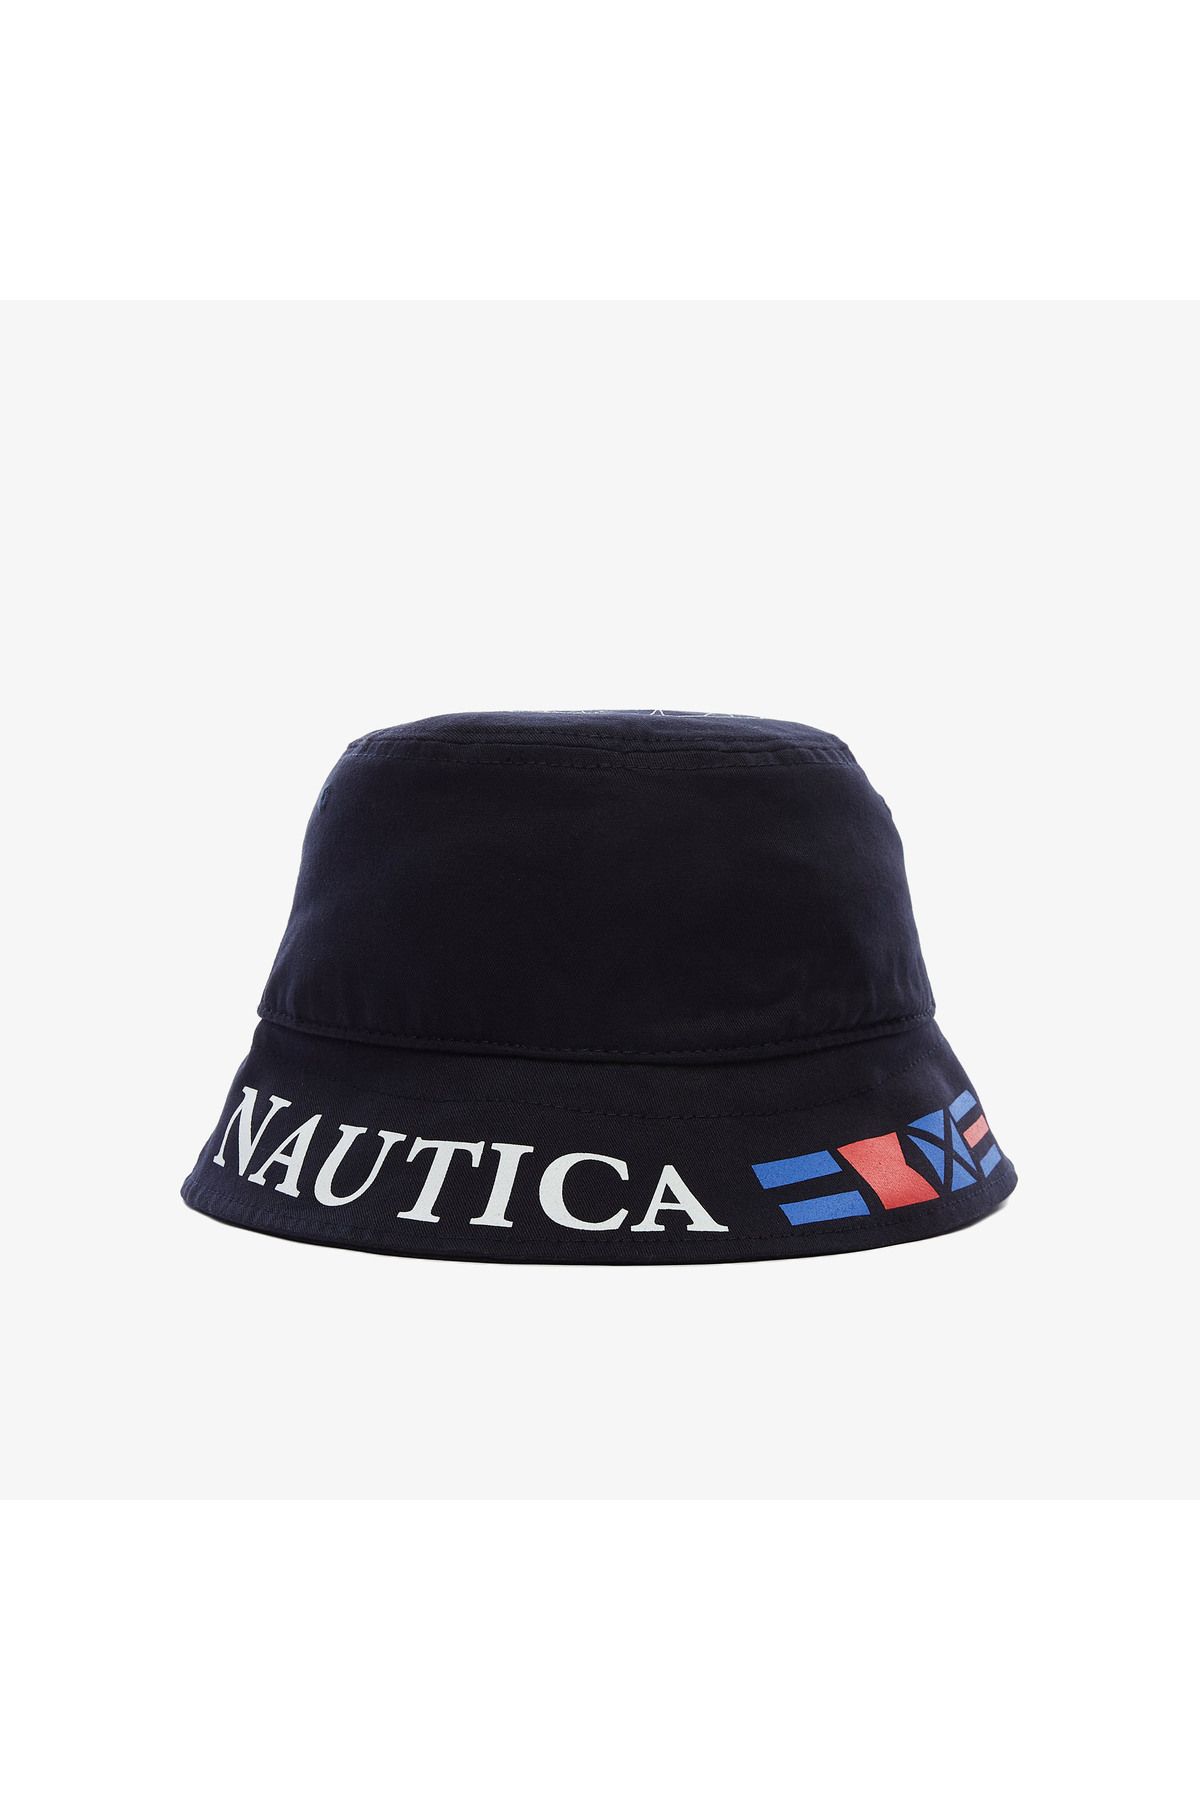 Nautica Unısex Lacivert Şapka